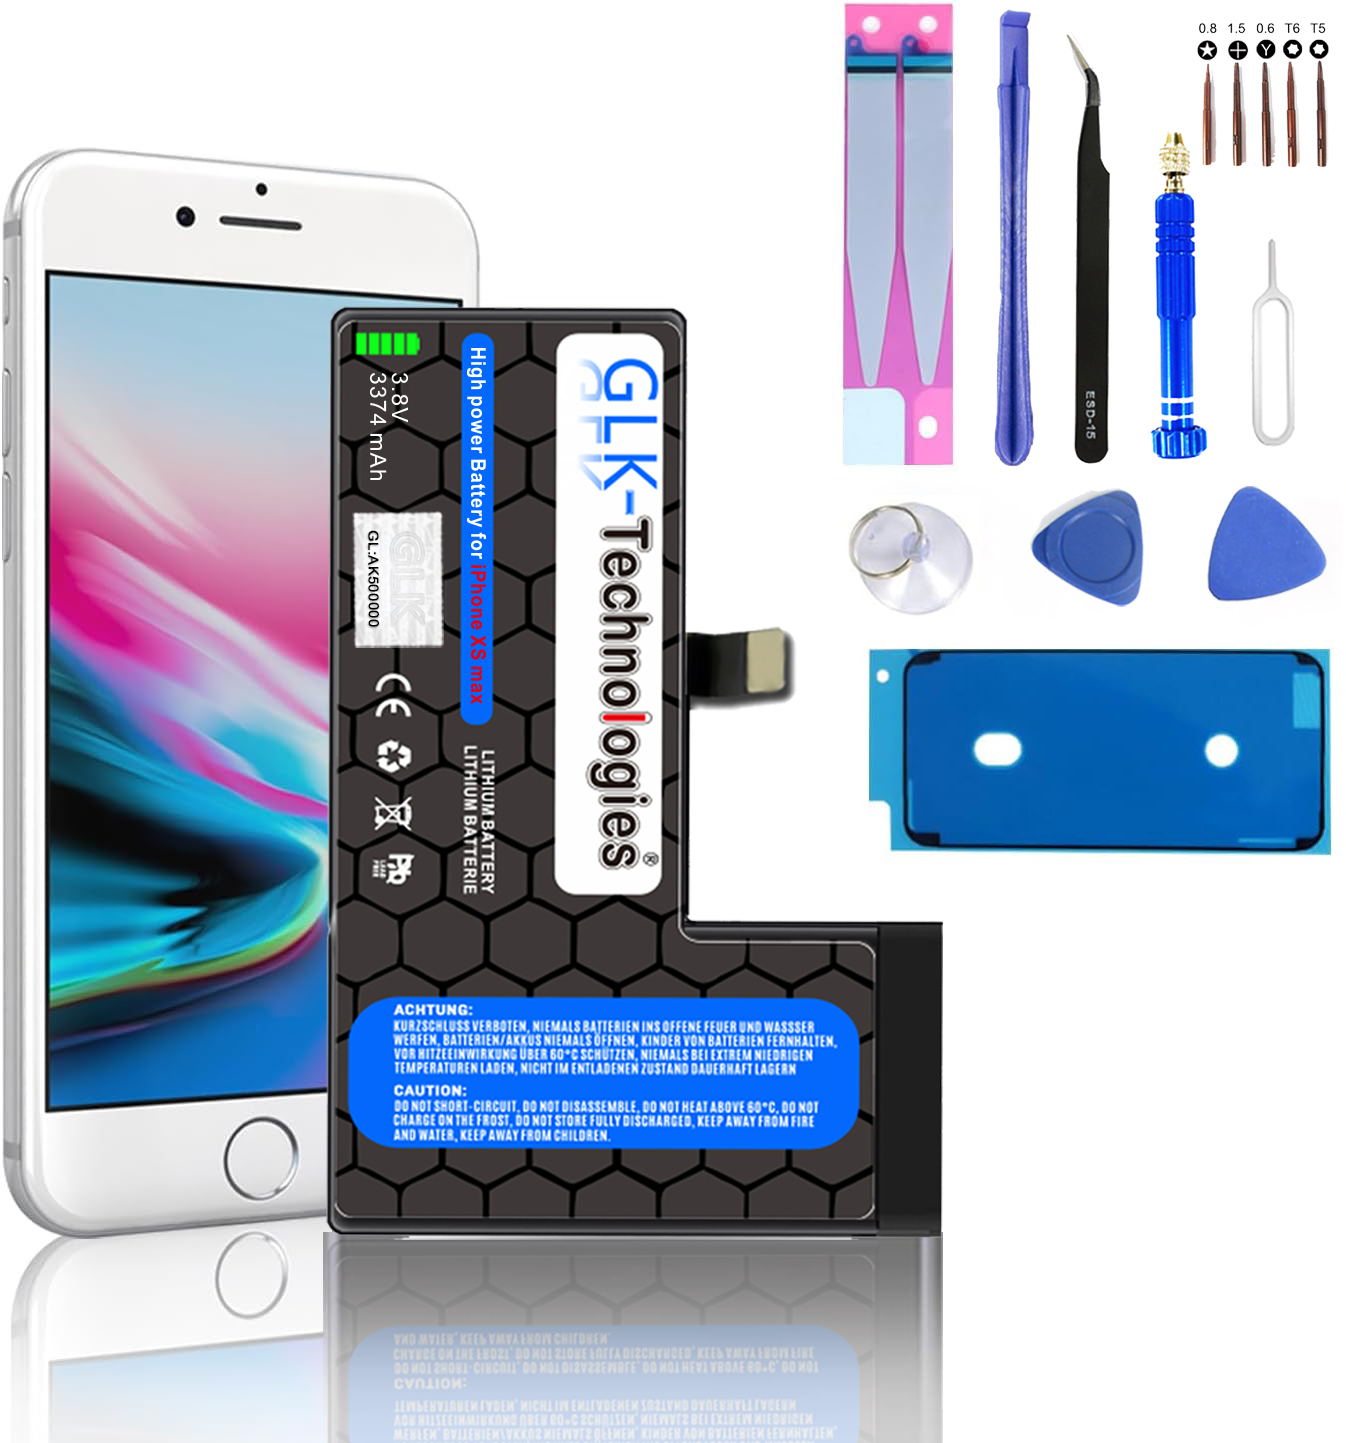 PROFI 2930 Werkzeug Akku, mAh iPhone Smartphone inkl. GLK-TECHNOLOGIES MAX Ersatz XS Lithium-Ionen-Akku